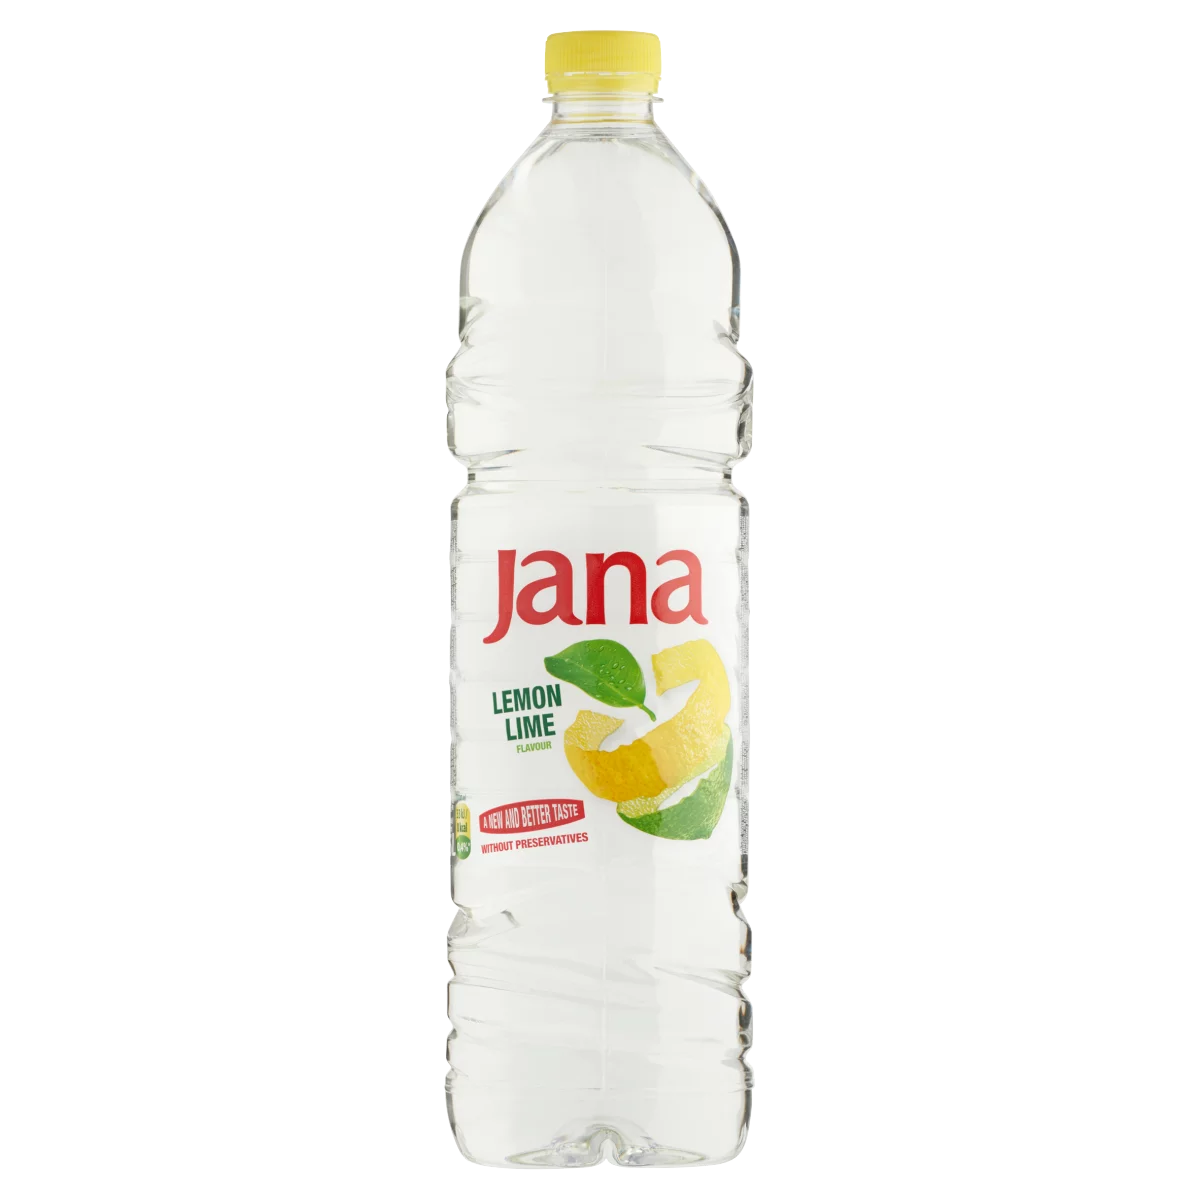  Jana citrom és limetta ízű, energiaszegény, szénsavmentes üdítőital 1,5 l